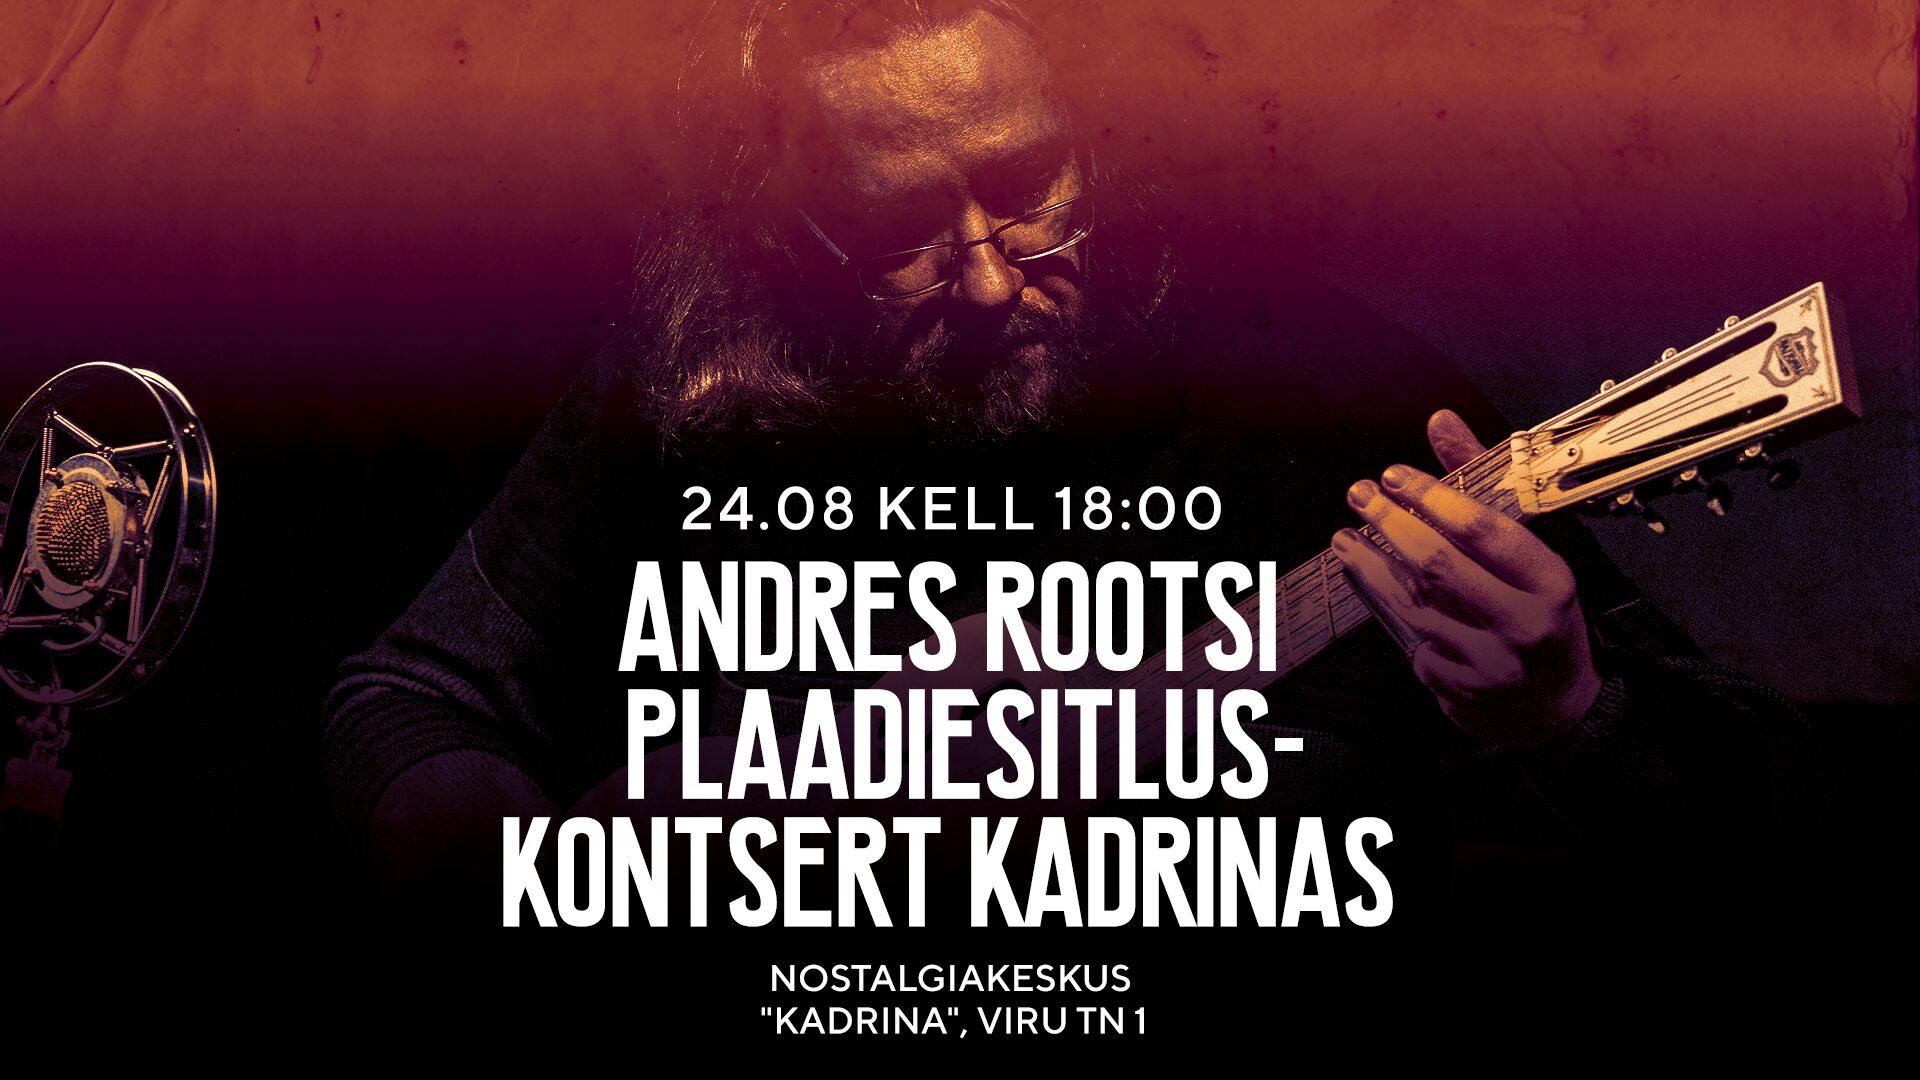 Andres Rootsi plaadiesitlus-kontsert Kadrinas